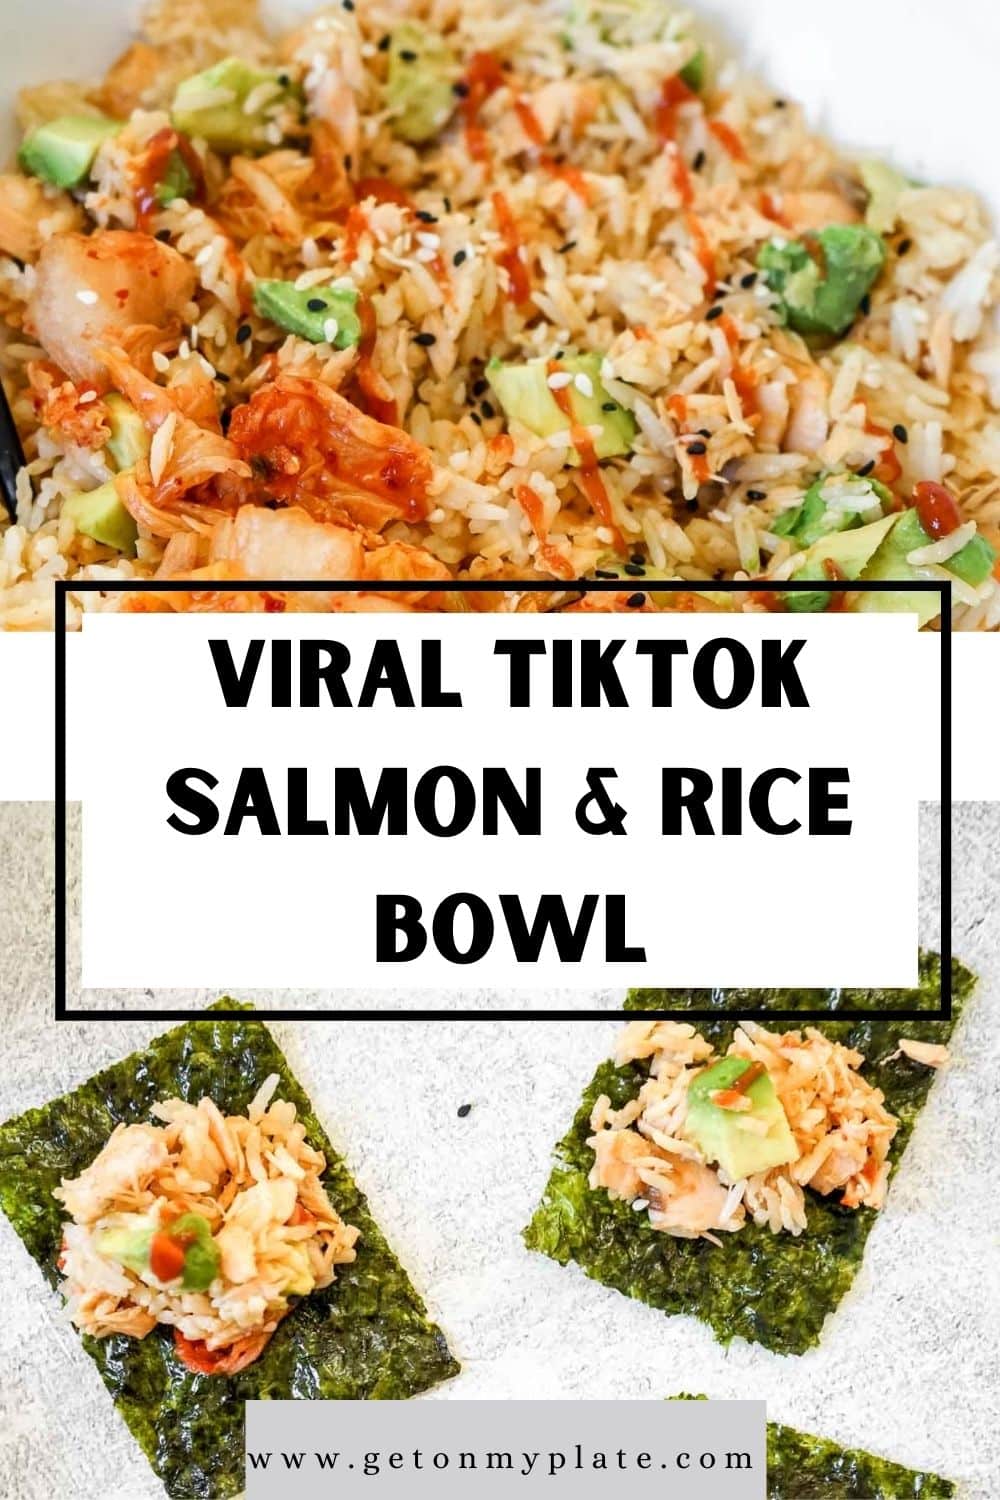 Viral Tiktok Salmon And Rice Bowl Recipe Recipe Get On My Plate 1420